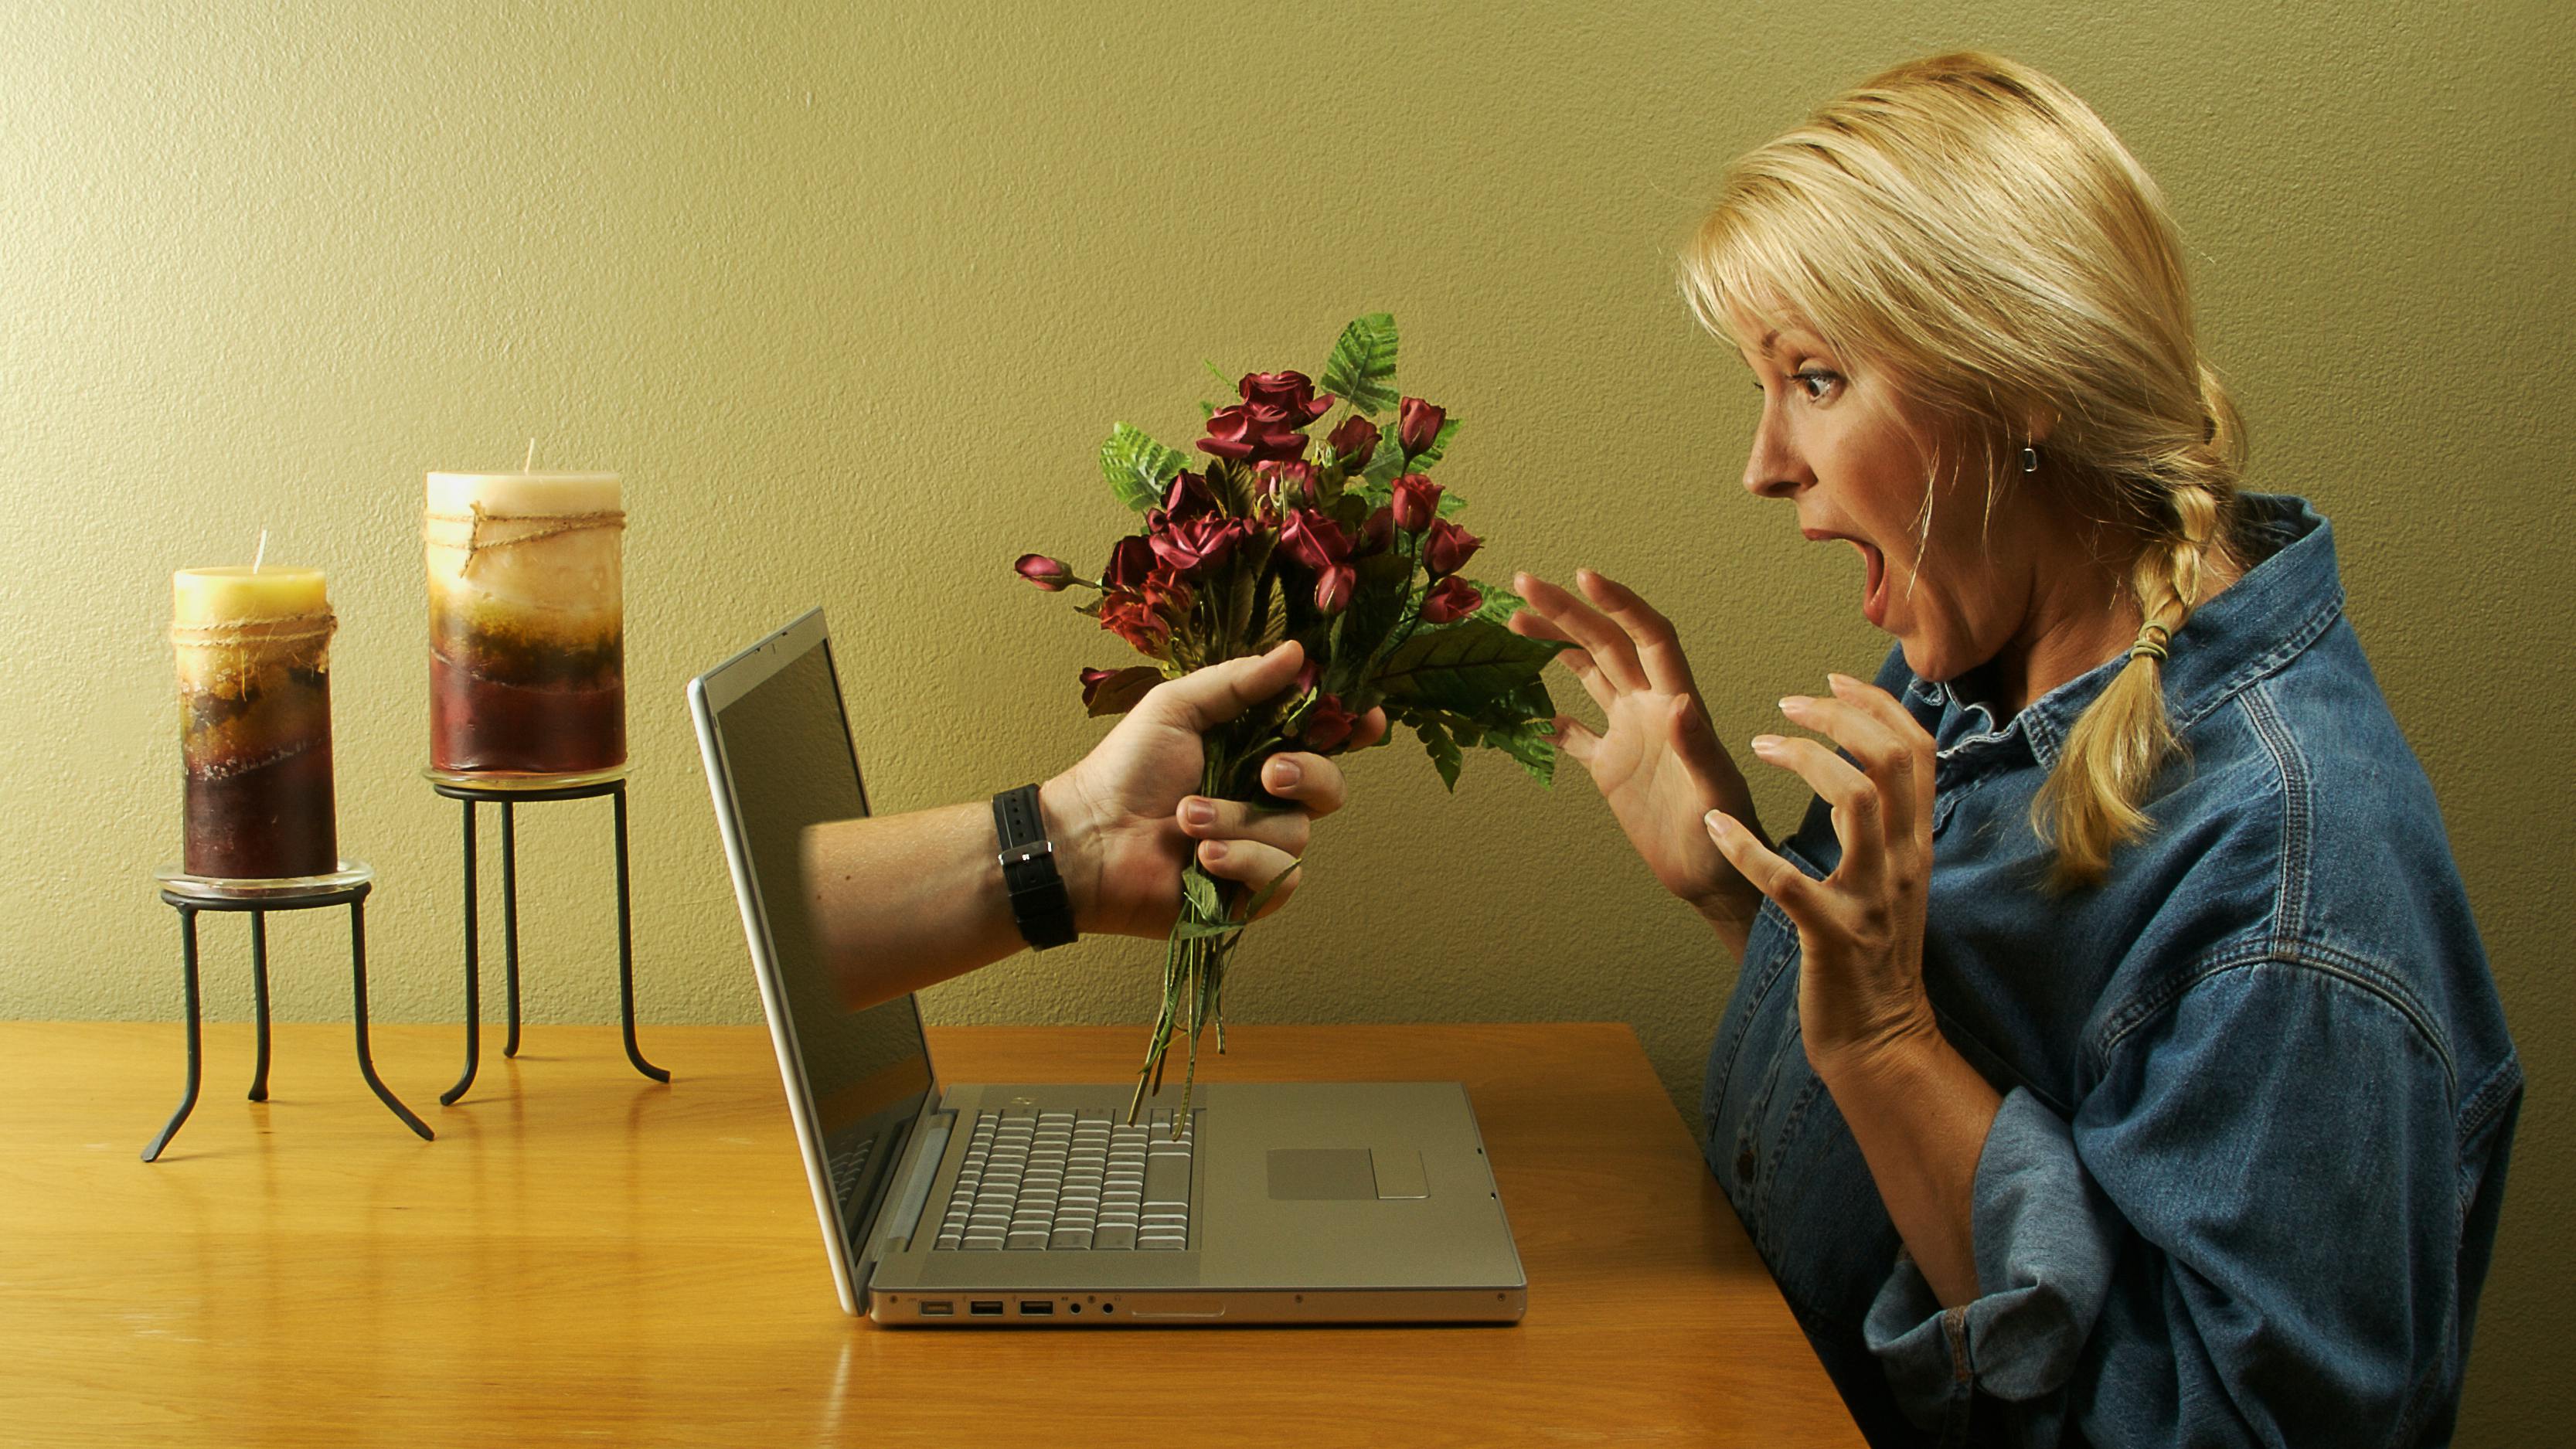 Социальные сети для знакомств. Виртуальная любовь. Женщина в интернете. Разговор в интернете. Отношения в инете.